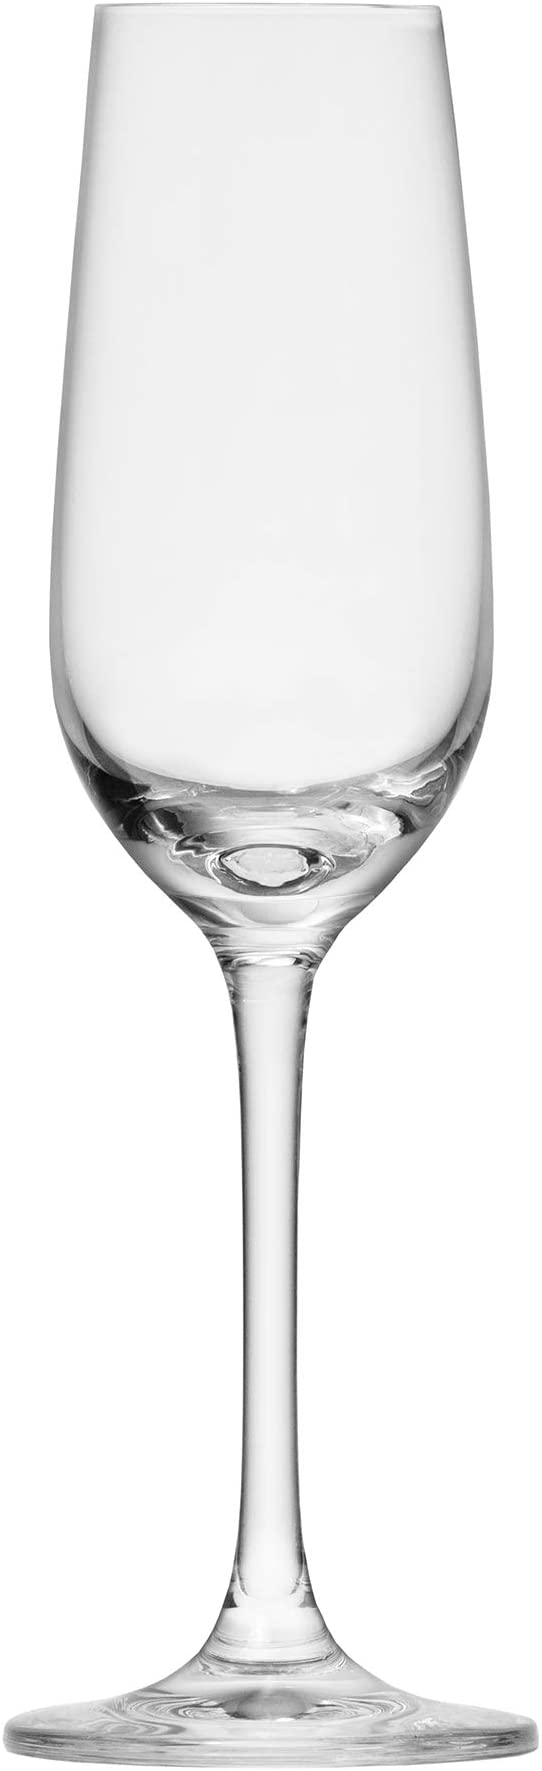 Schott Zwiesel Tritan Crystal Sherry Glass